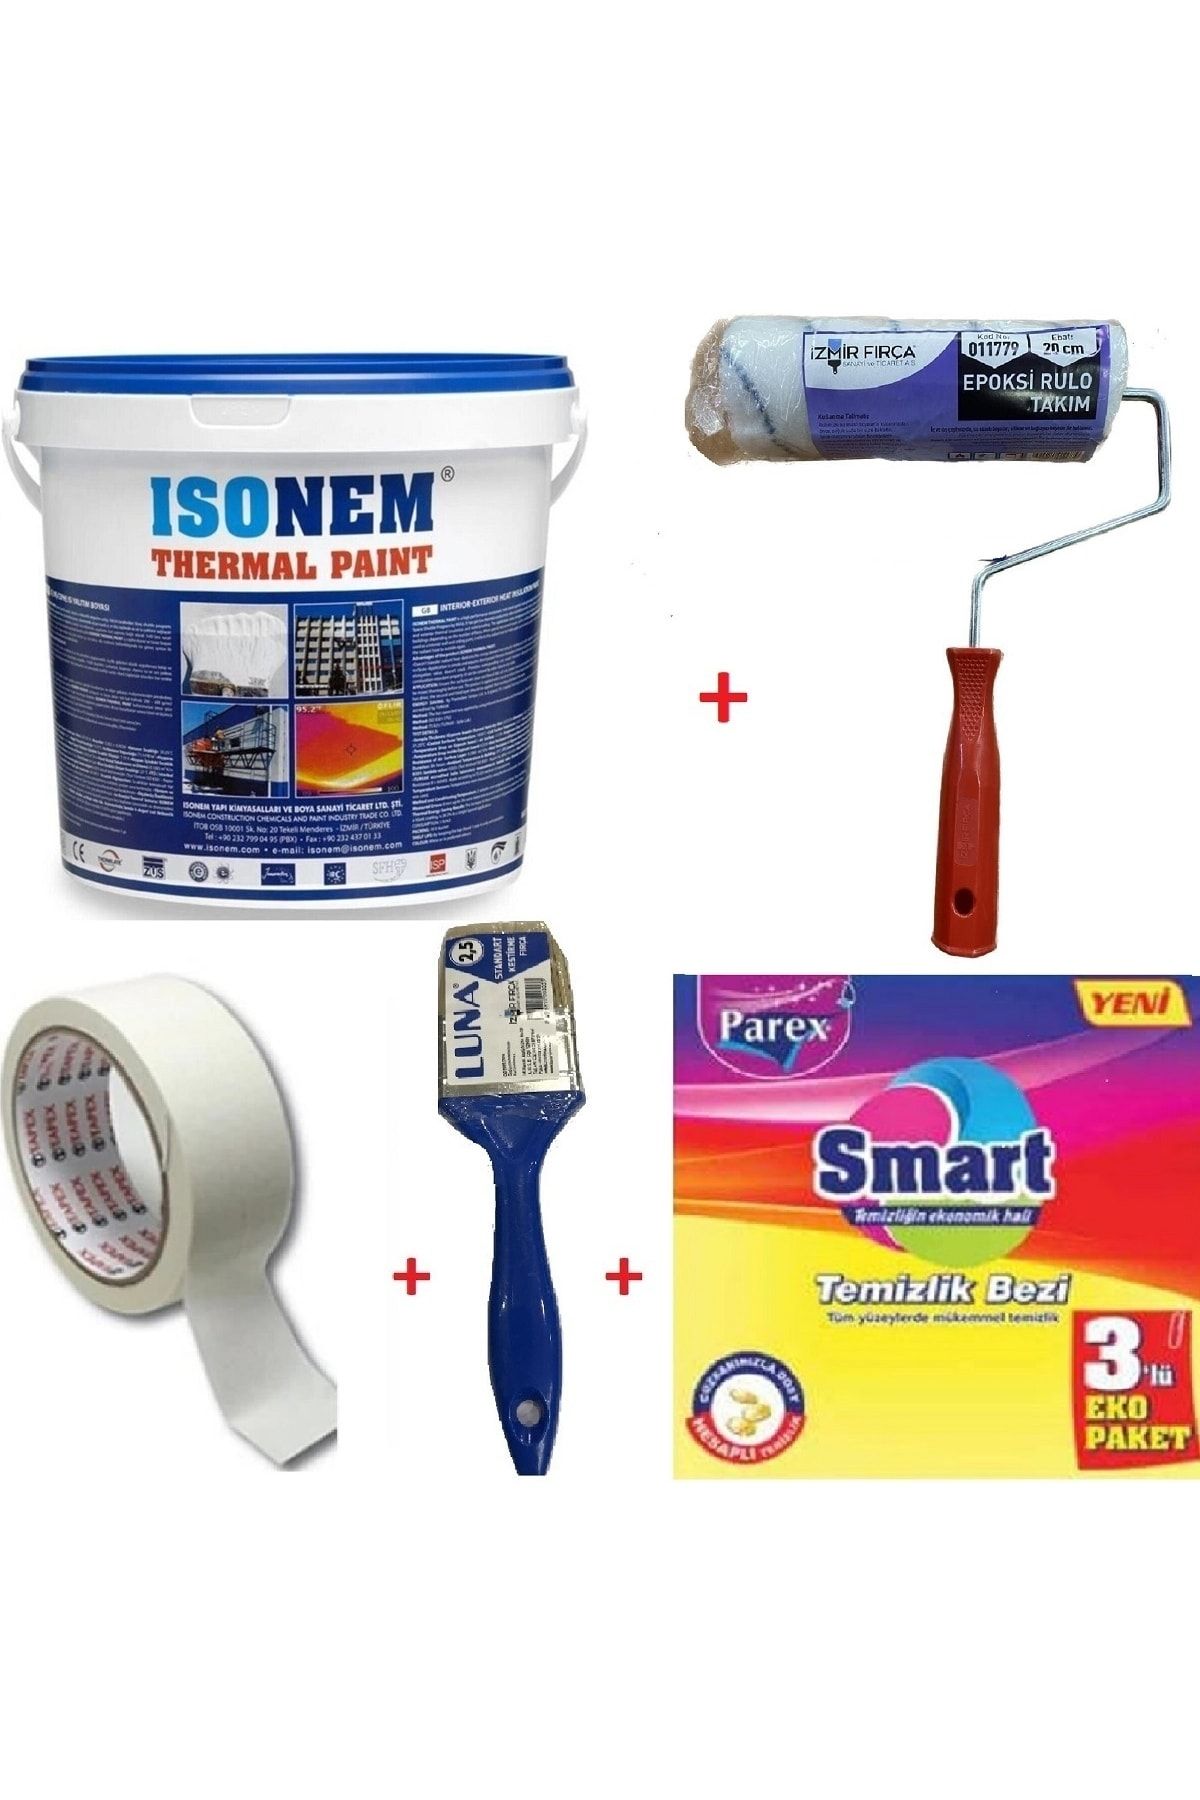 Isonem Thermal Paint Isı Yalıtım Boyası + Epoksi Rulo 20 Cm + Fırça + Maskeleme Bandı +temizlik Bezi -set -